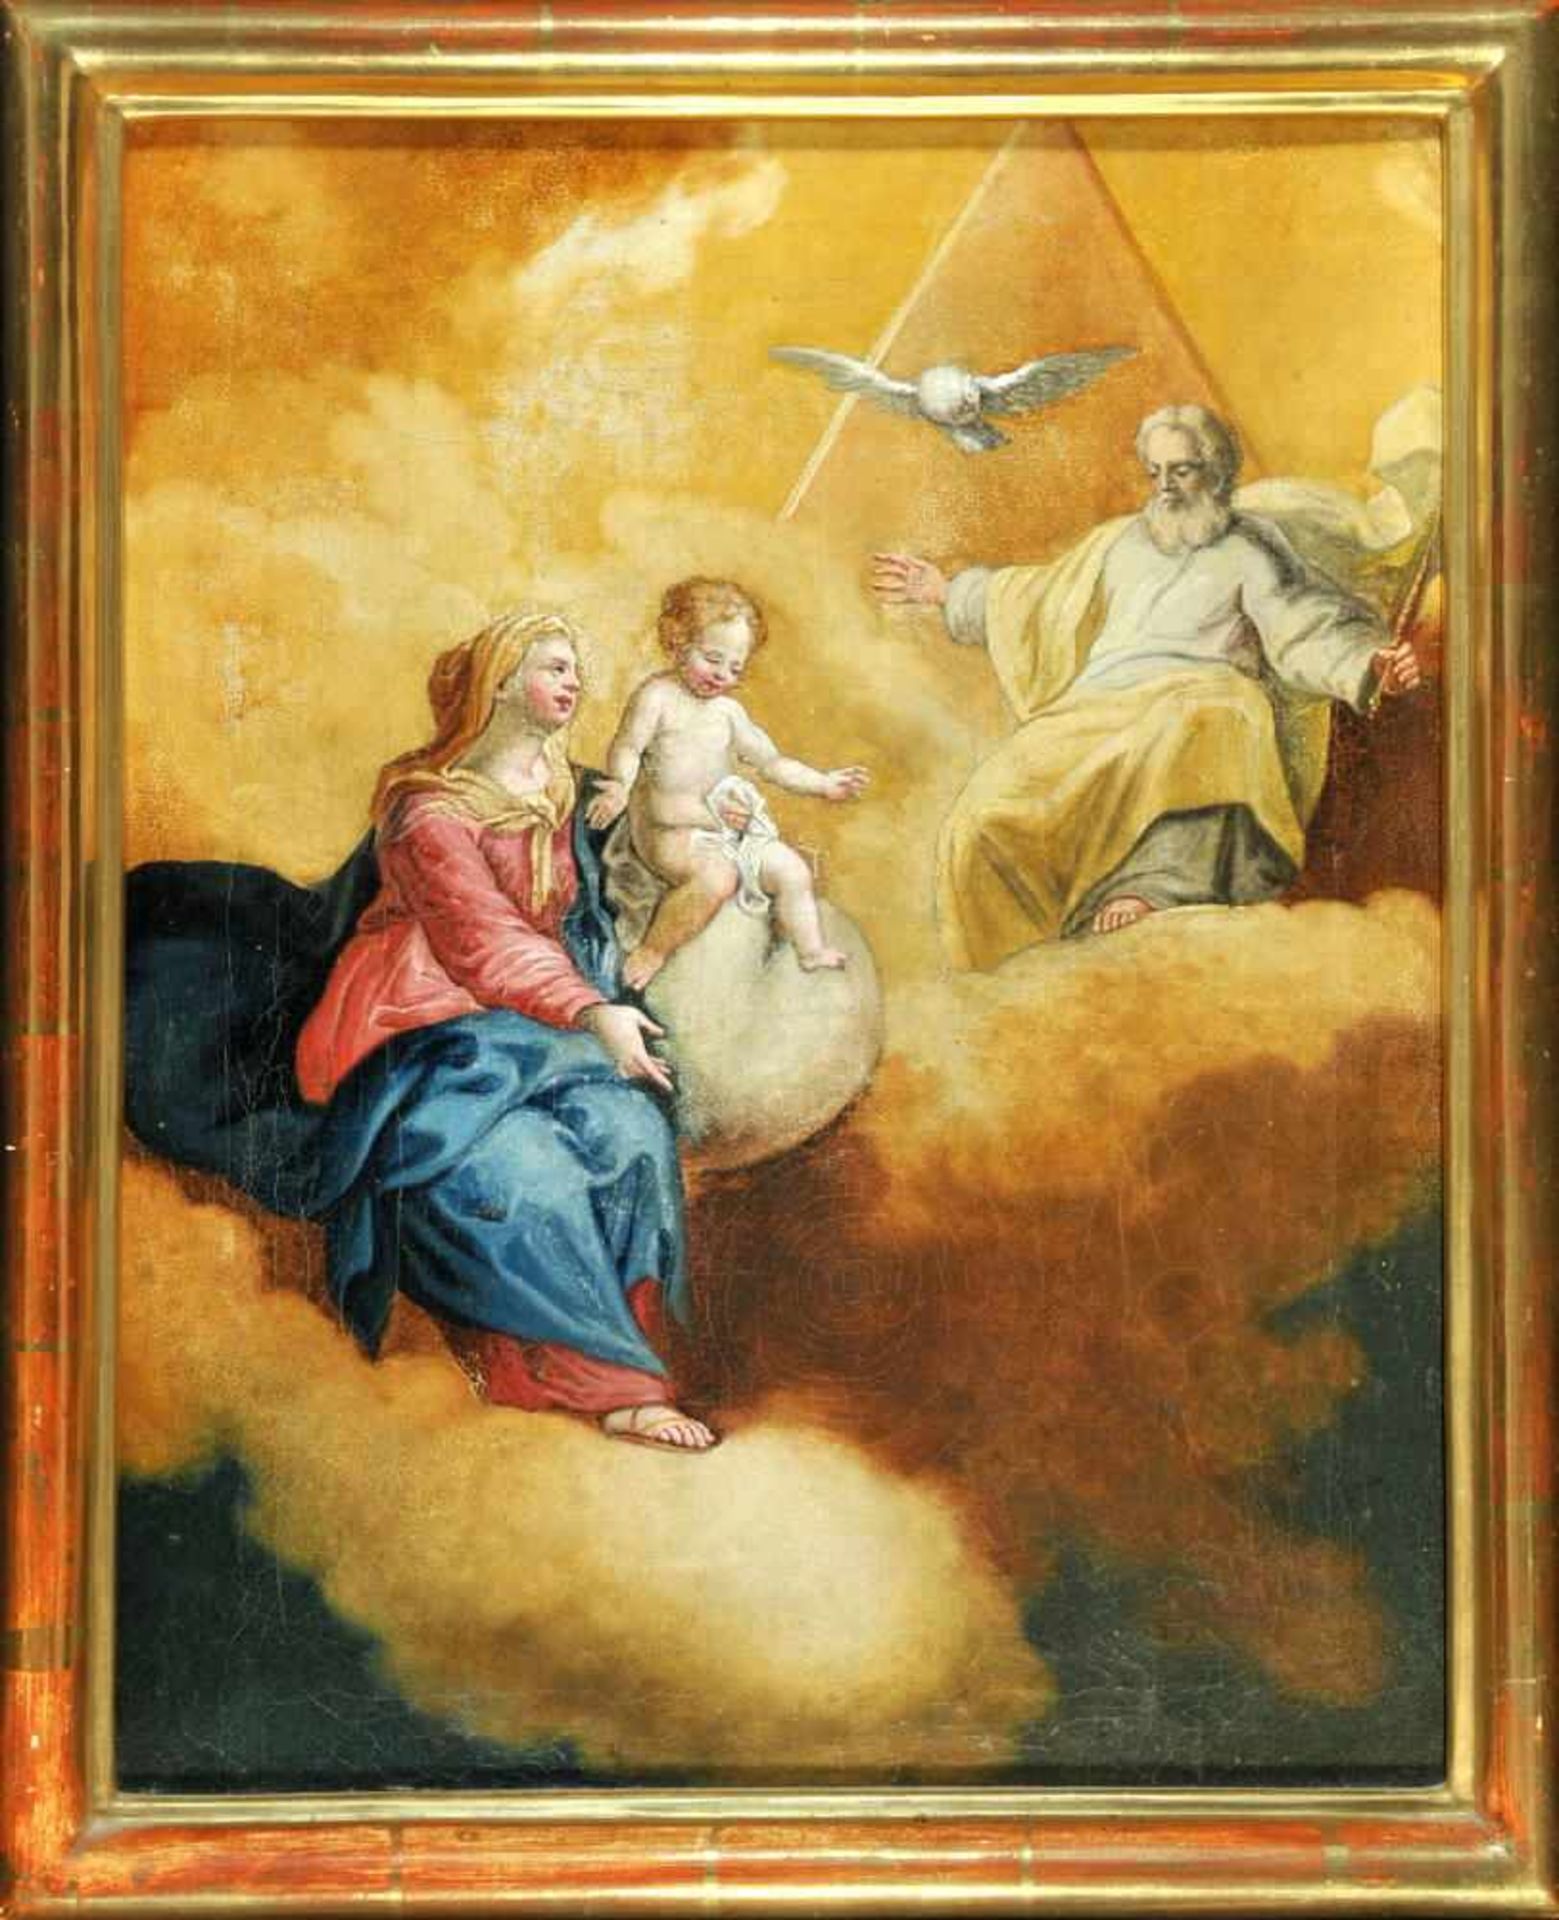 Bildnismaler des 19. Jh.Öl/Lwd, 44 x 36 cm, " Maria mit Hl. Dreifaltigkeit "